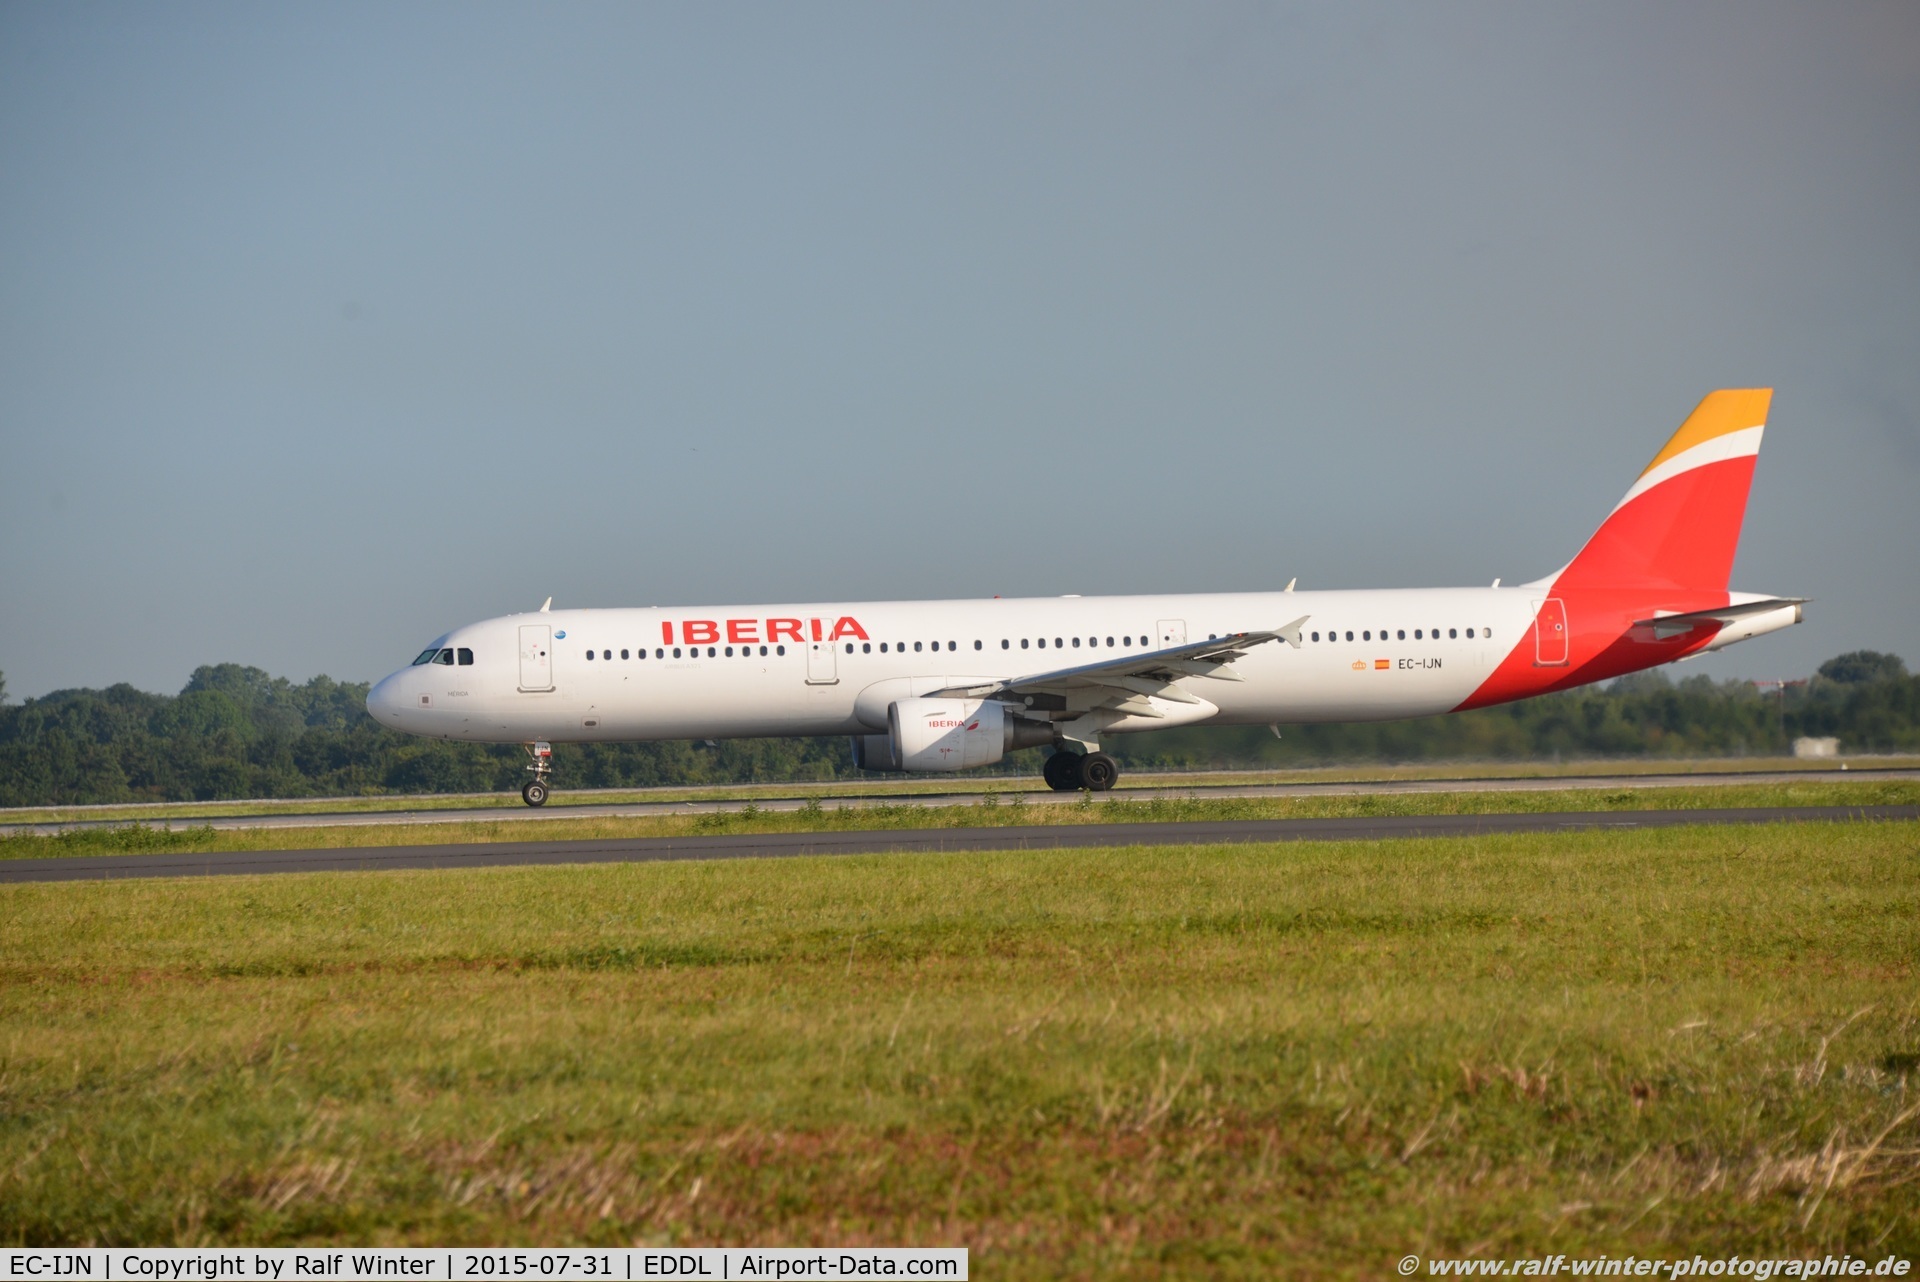 EC-IJN, 2002 Airbus A321-211 C/N 1836, Airbus A321-211 - IB IBE Iberia 'Merida' - 1836 - EC-IJN - 31.07.2015 - DUS